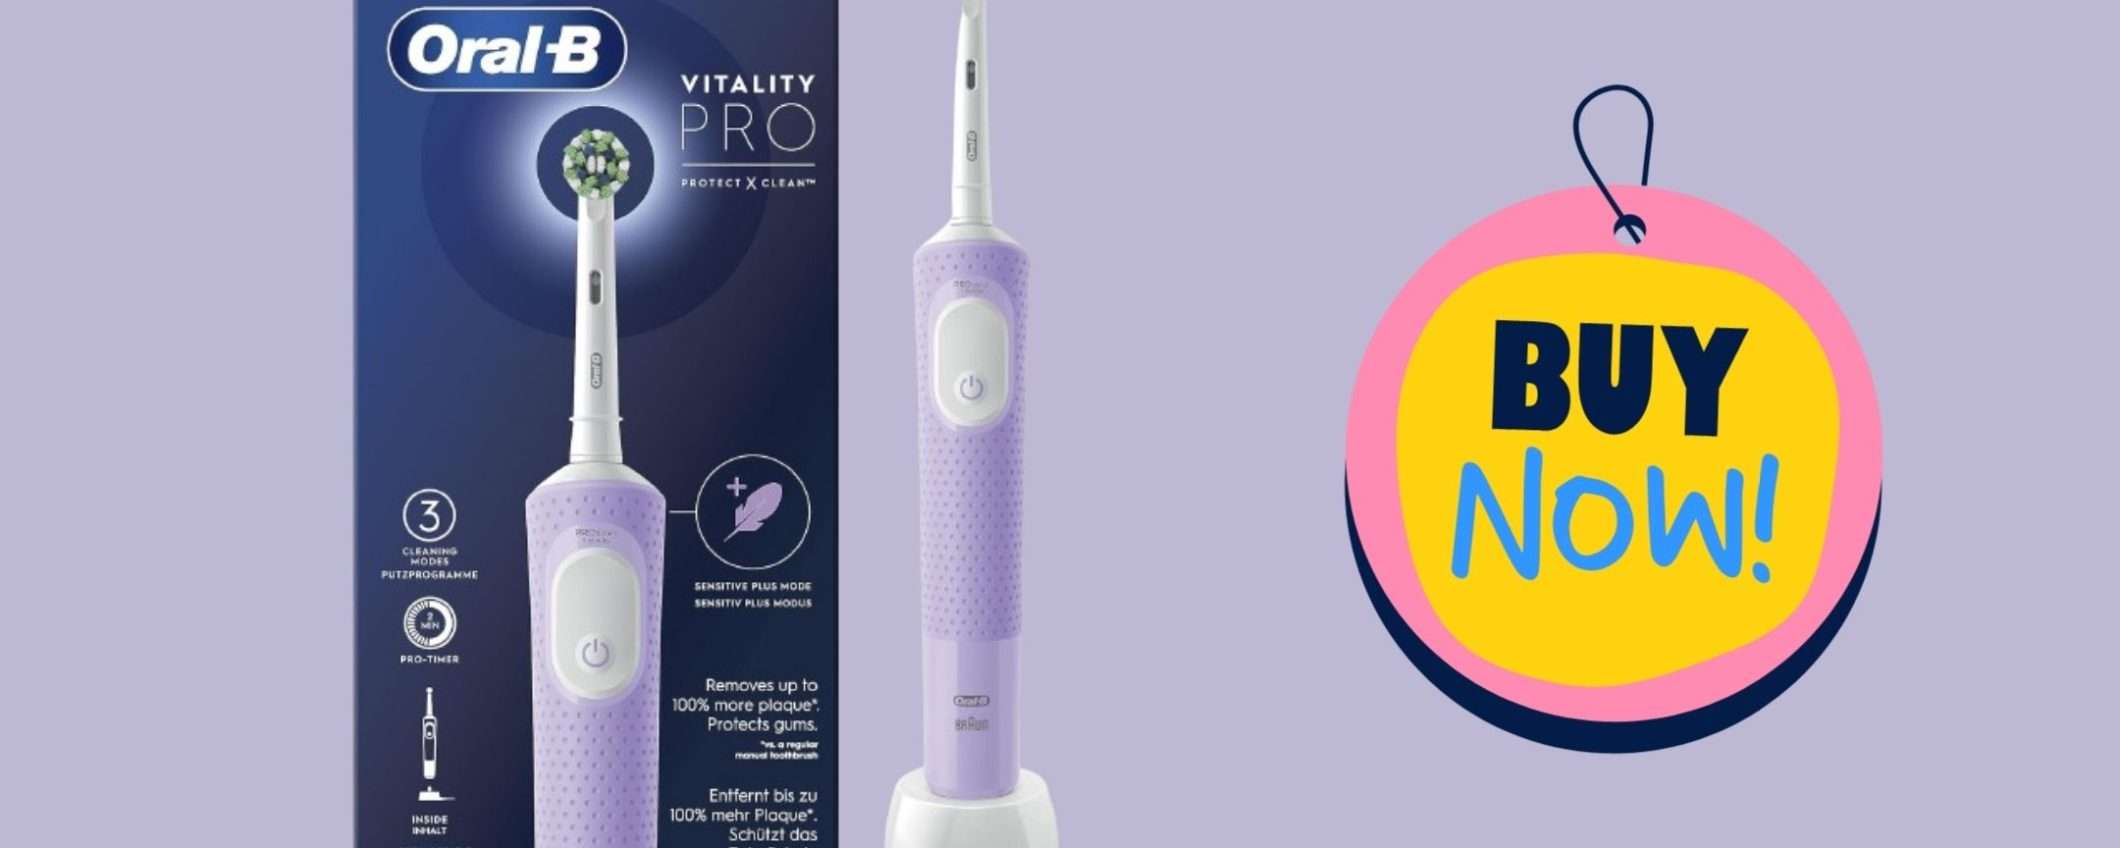 Oral-B Vitality Pro 3 a prezzo stracciato su Amazon!